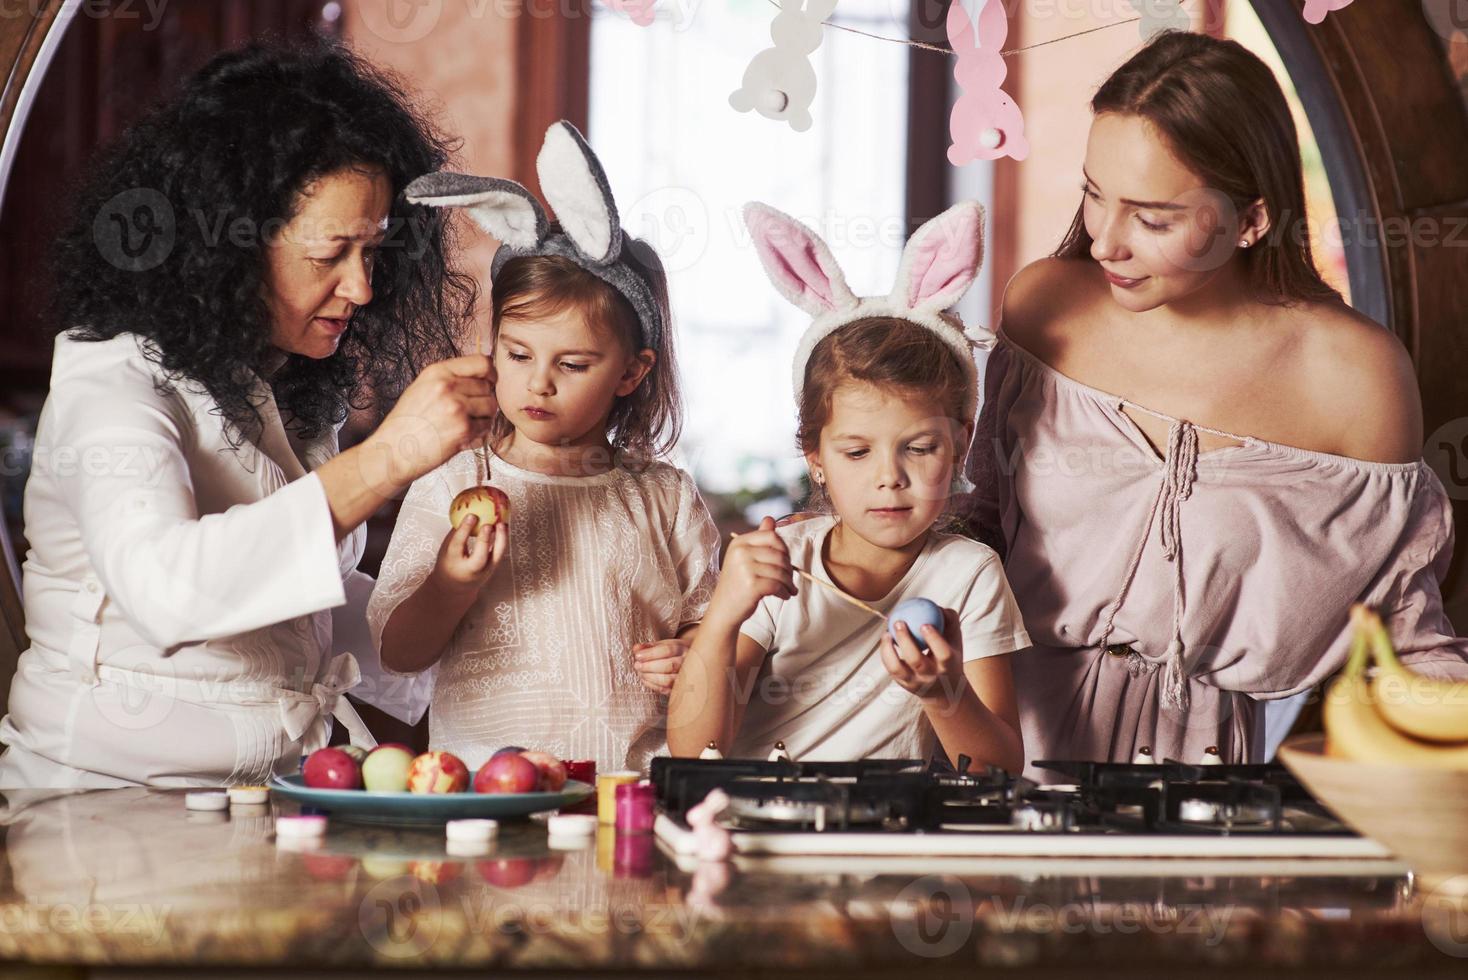 loisirs en famille. passez de joyeuses pâques. deux petites filles apprenant par leurs parents à peindre des œufs pendant les vacances photo